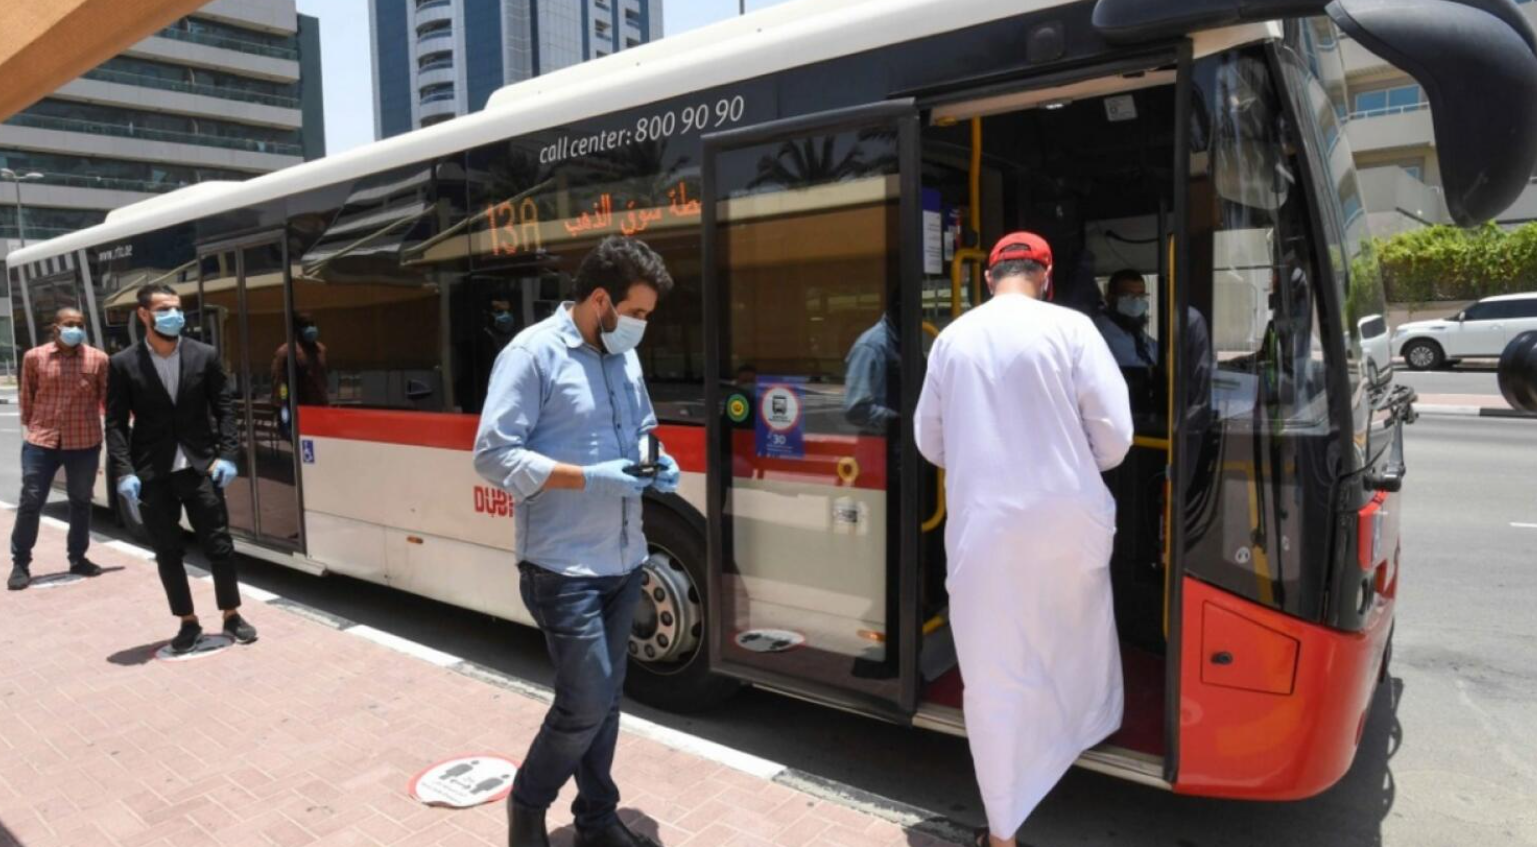 Дубай недорого: ТОП-лайфхаков как передвигаться по городу от 1 дирхама